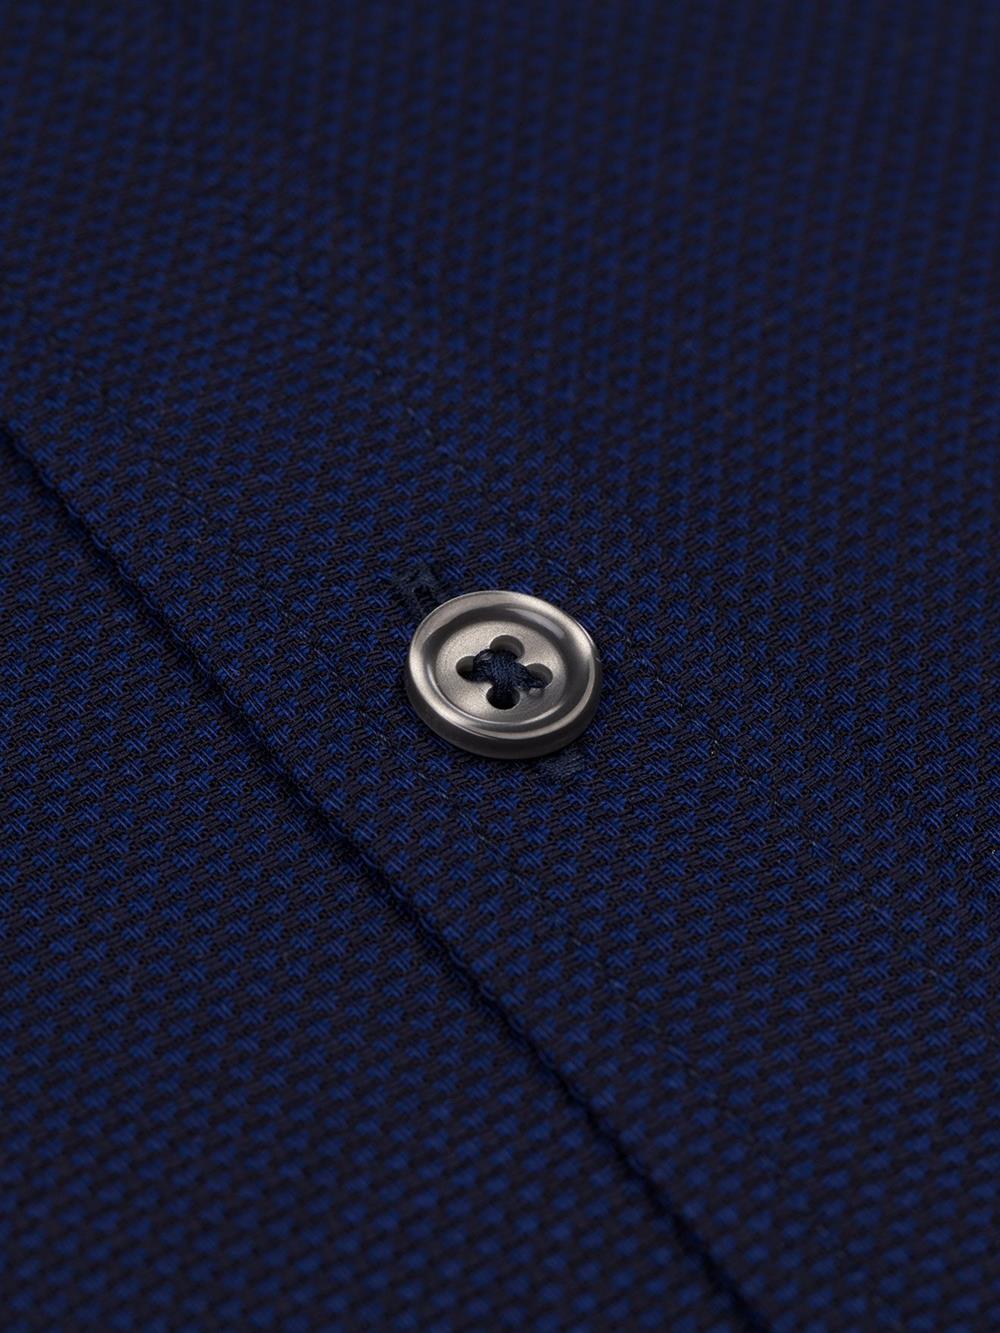 Camisa entallada Leo azul marino texturizada - Cuello corto